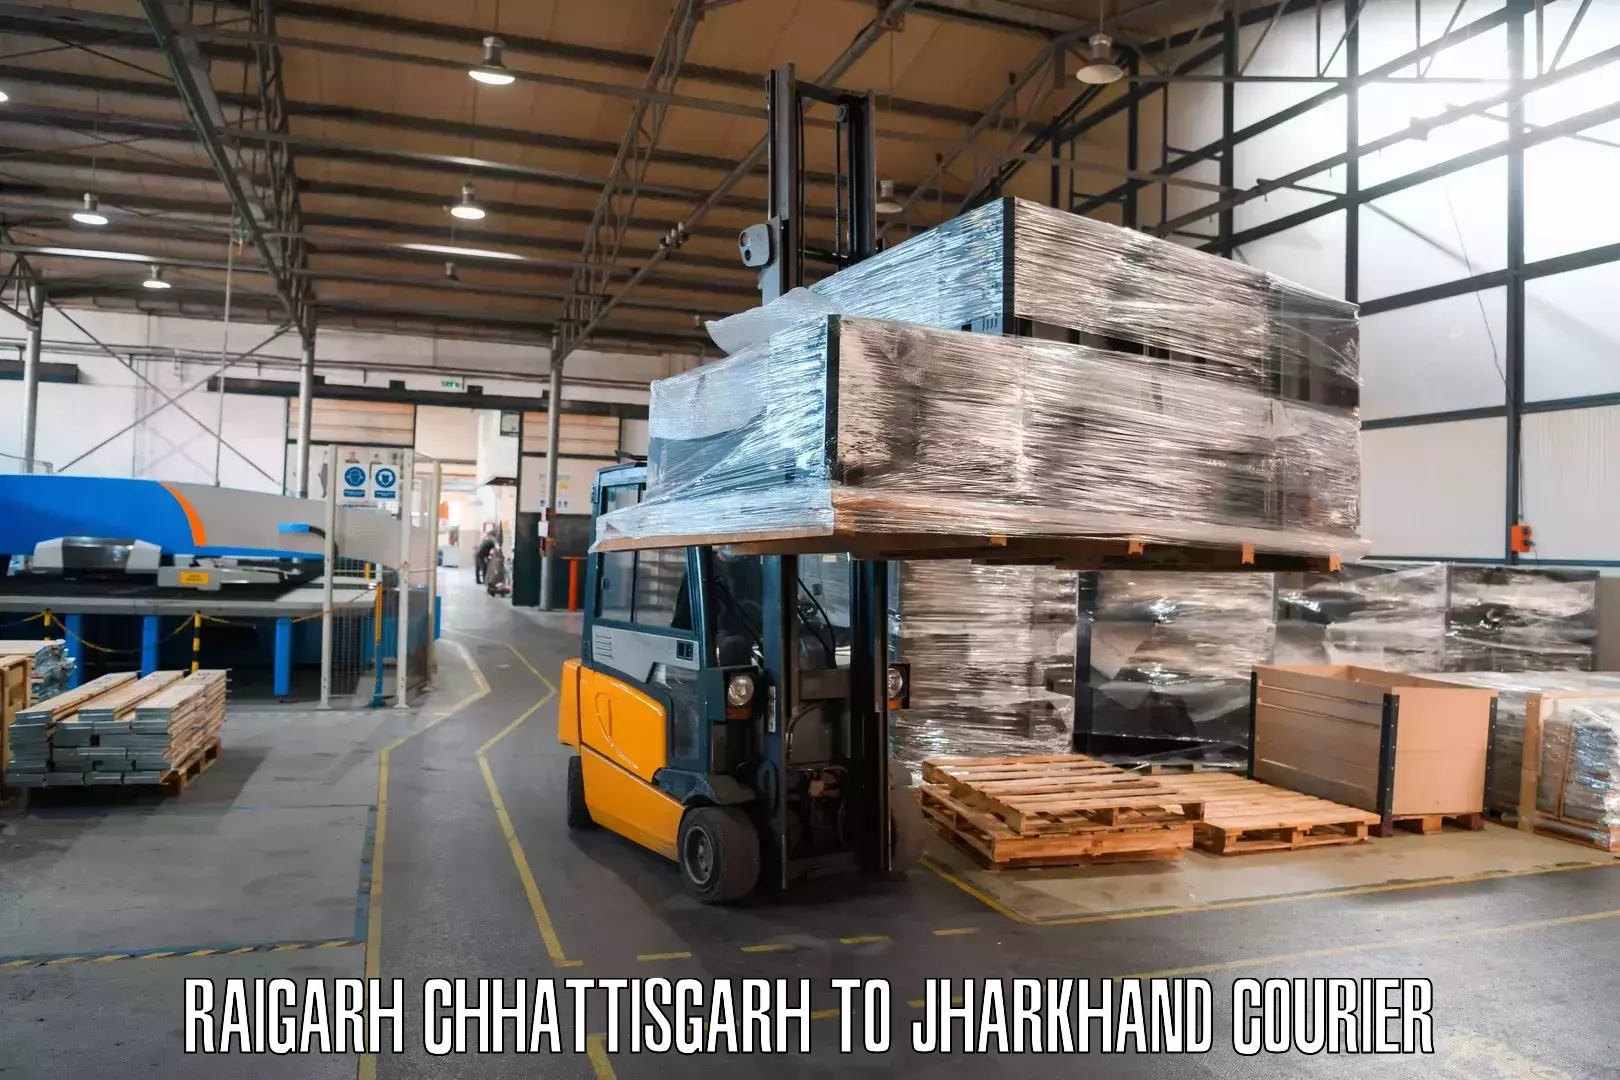 Tracking updates in Raigarh Chhattisgarh to Jharkhand